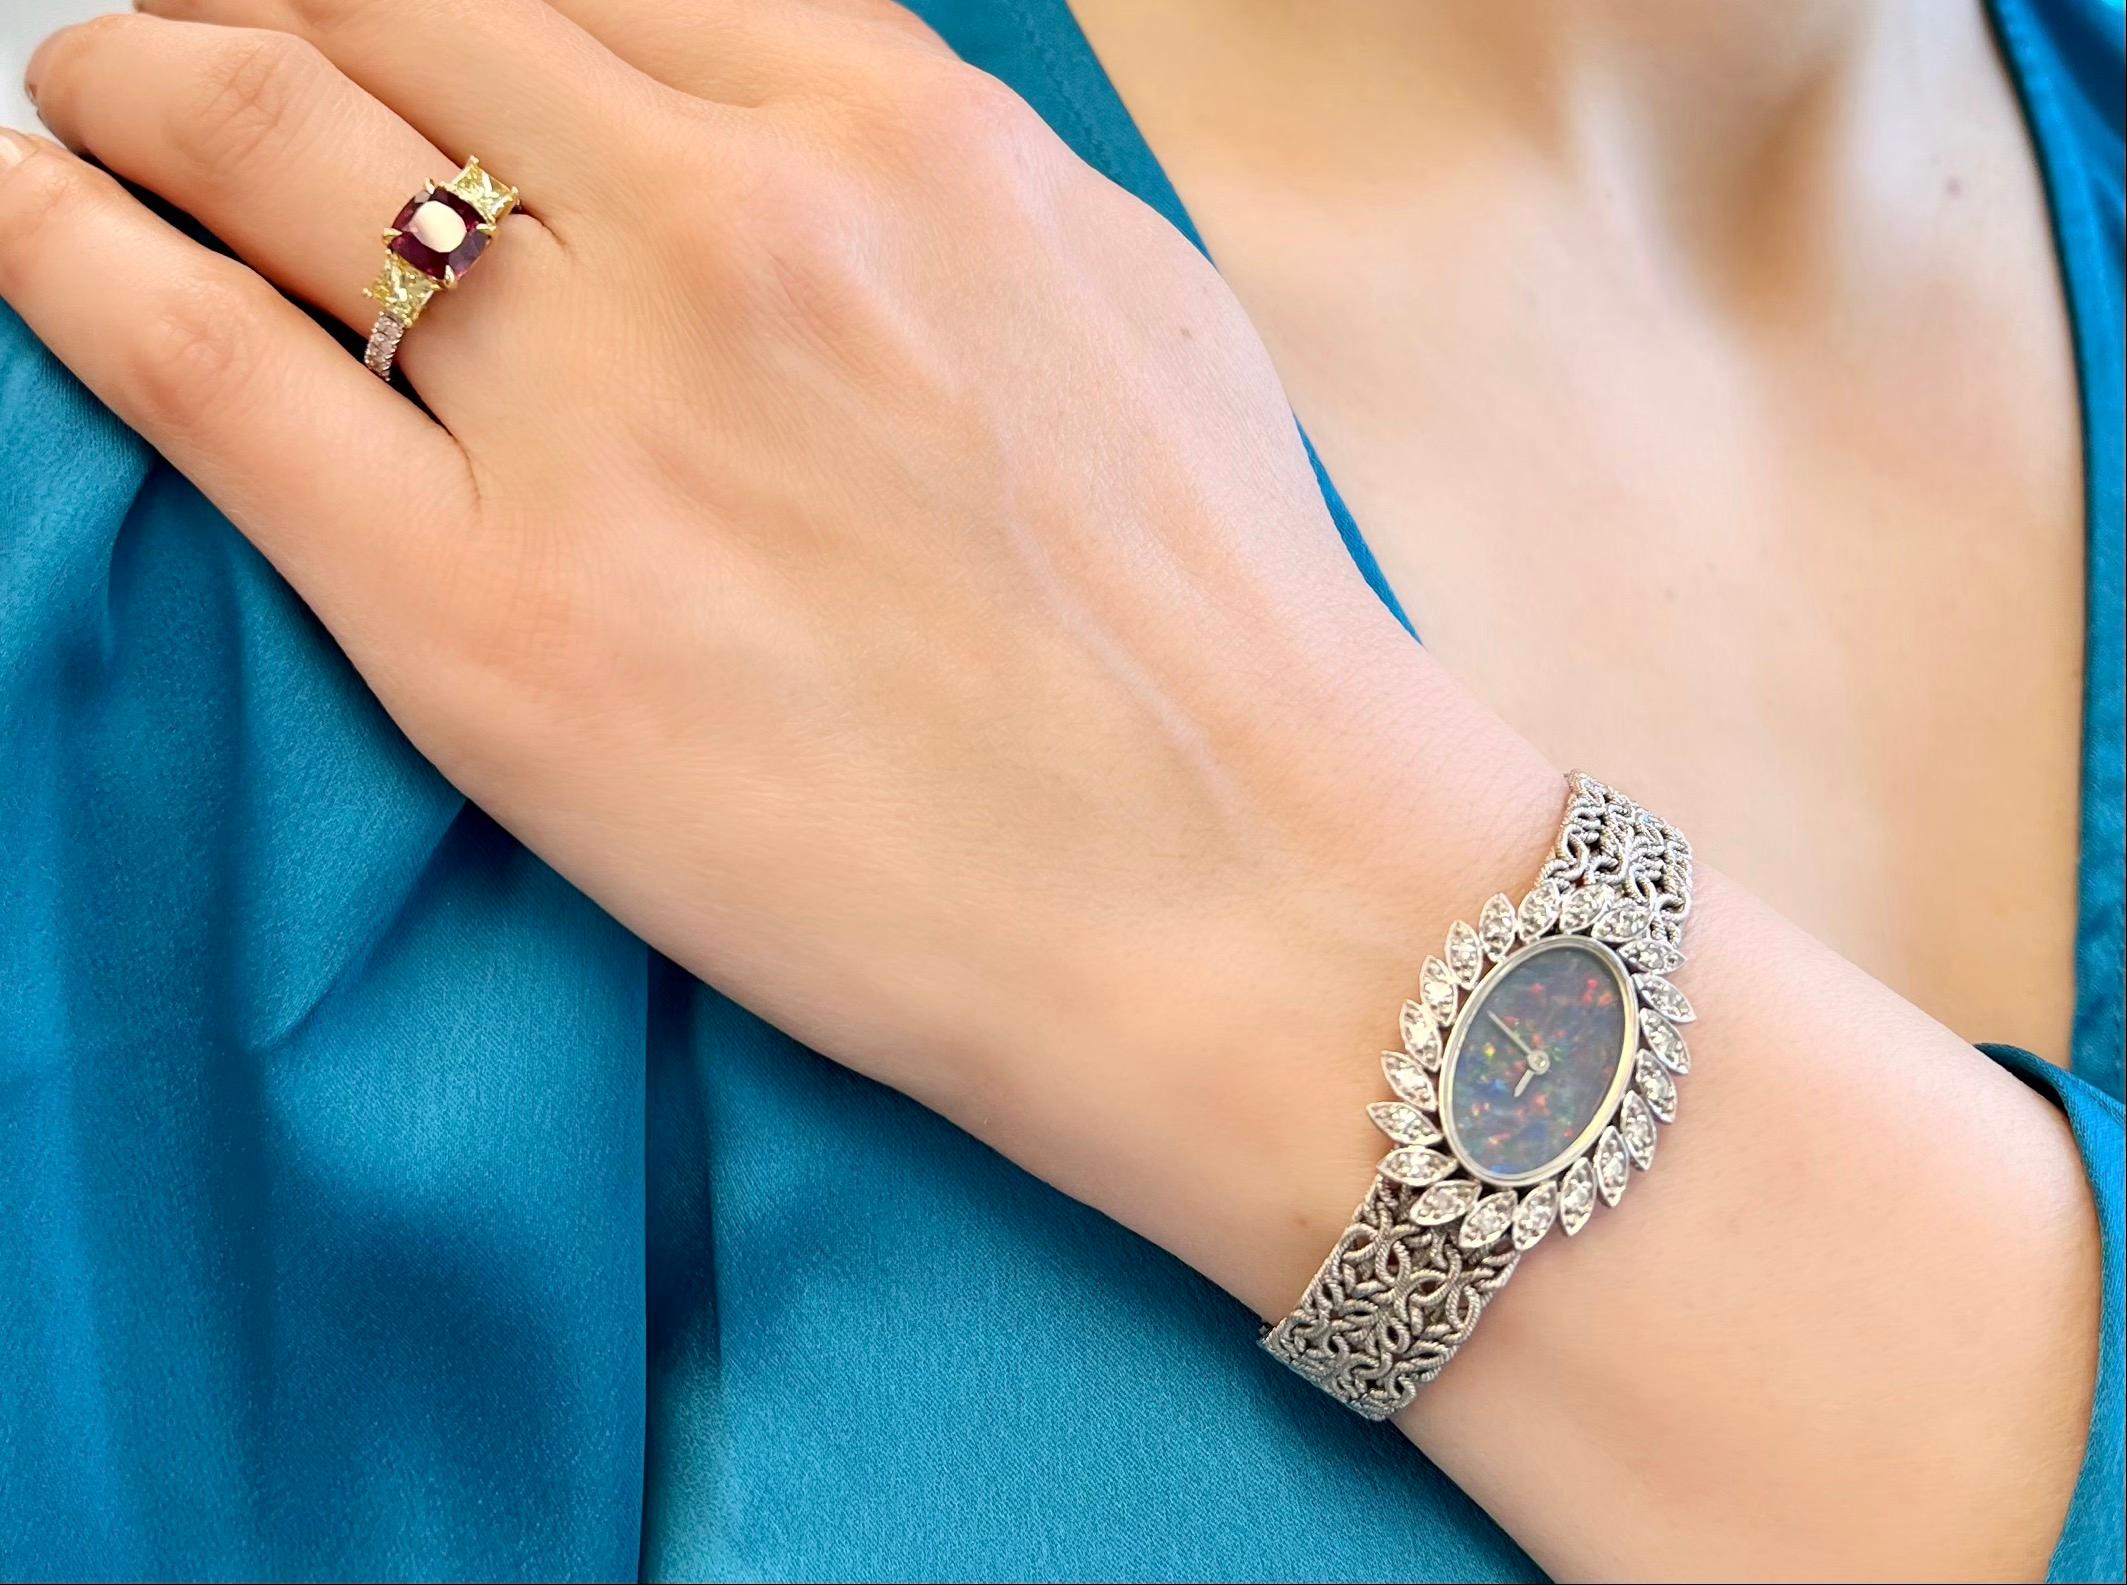 Diese einzigartige Chopard Damenarmbanduhr im Vintage-Stil verfügt über ein elegantes Opal-Zifferblatt an einem strukturierten Goldarmband, das vollständig aus 18 Karat Weißgold gefertigt ist.

Der zeitlose Zeitmesser ist mit einer Diamantumrandung